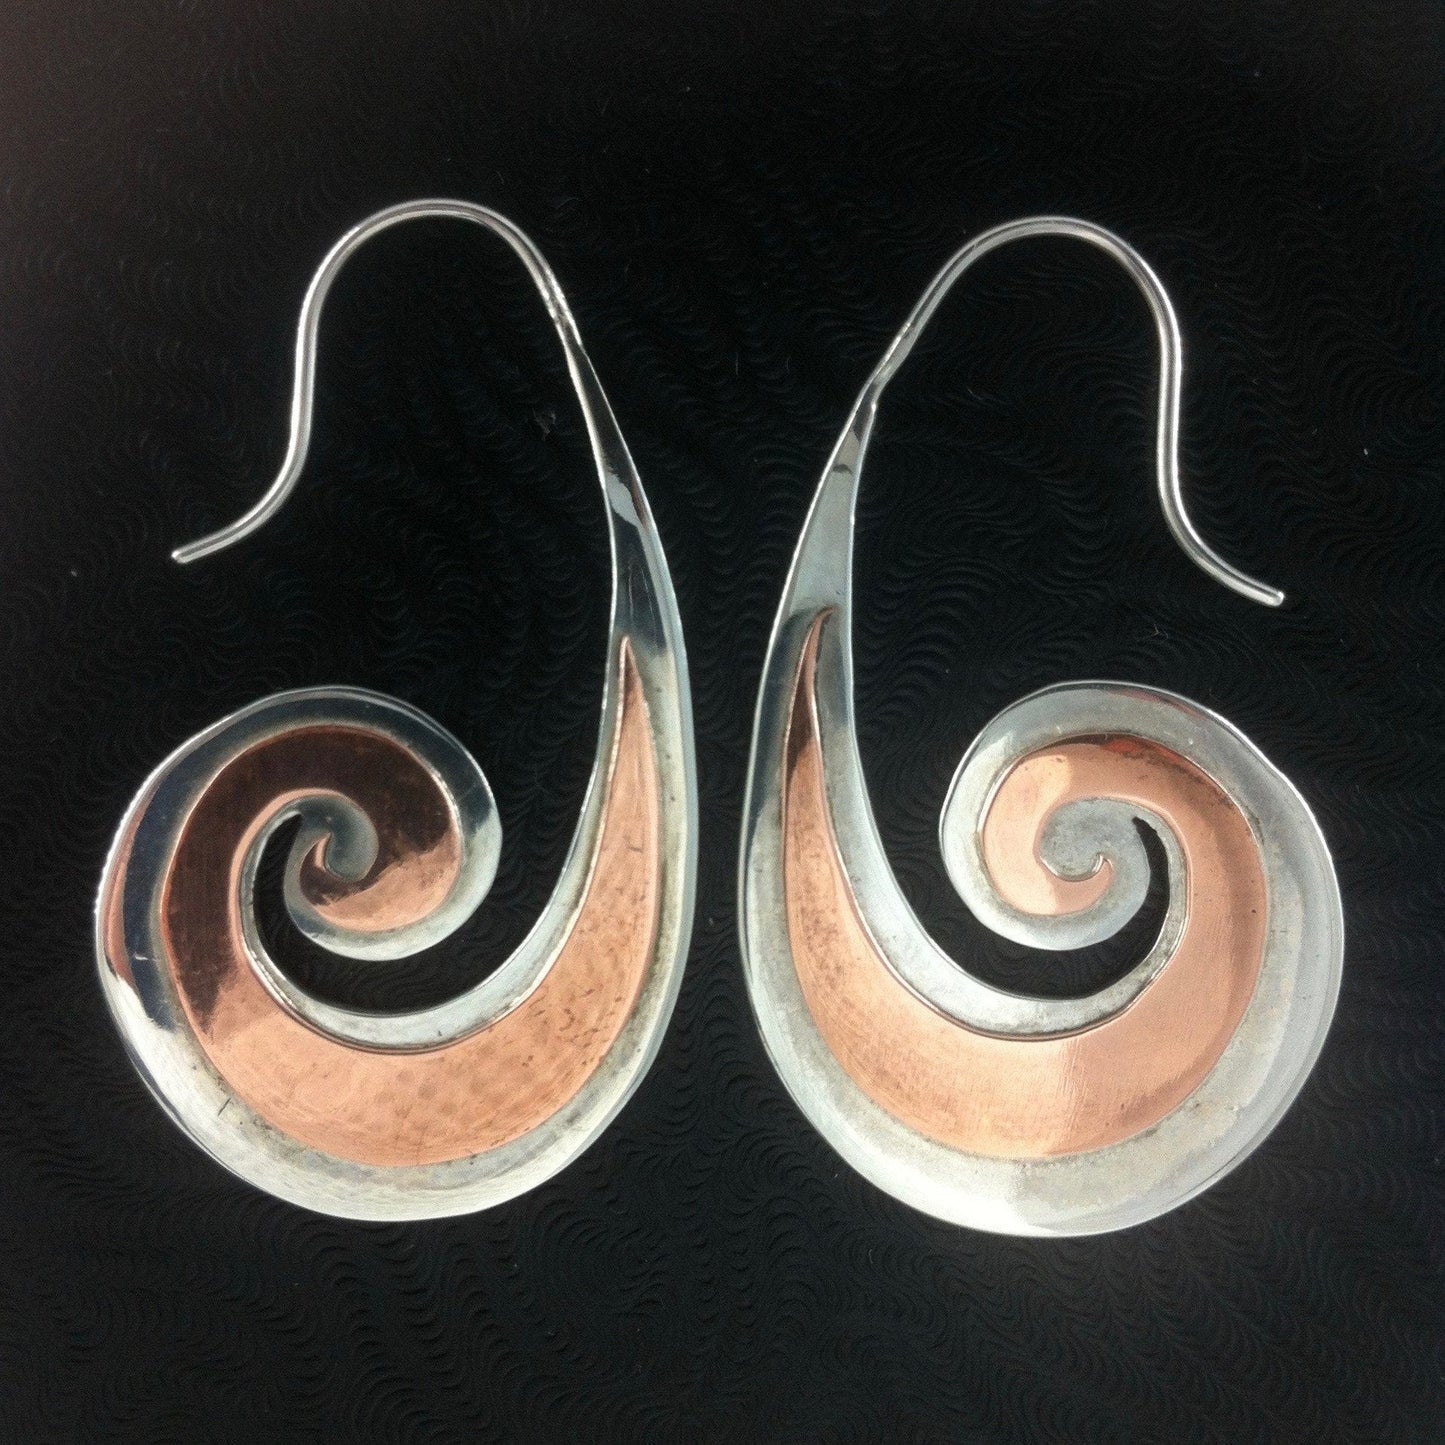 Tribal Earrings :|: Heavy Spiral. sterling silver with copper highlights earrings. | Tribal Silver Earrings